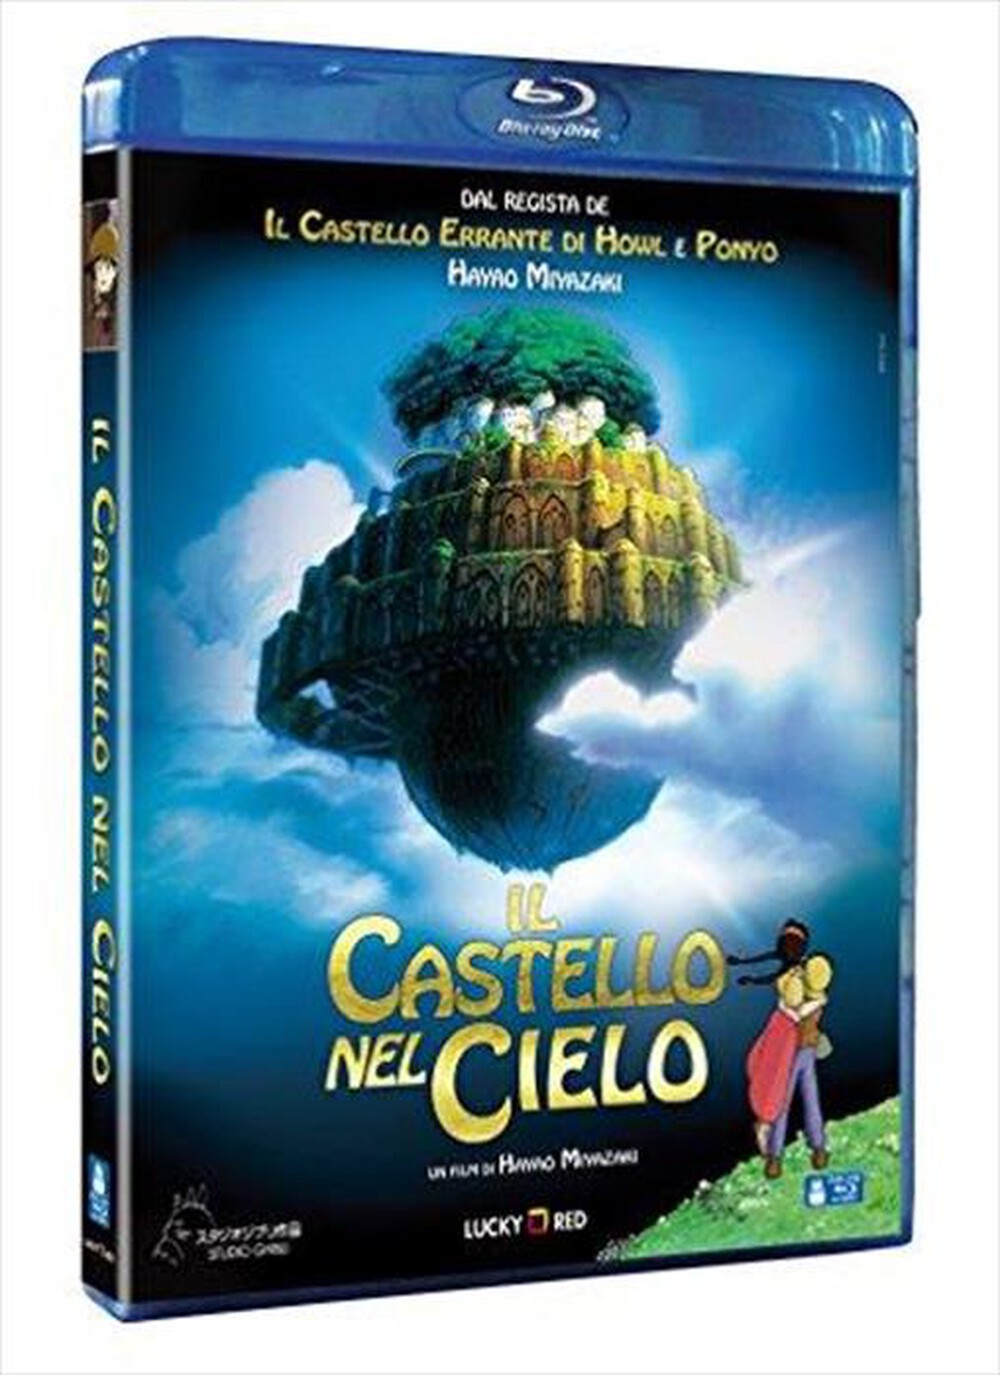 "WARNER HOME VIDEO - Castello Nel Cielo (Il) - "